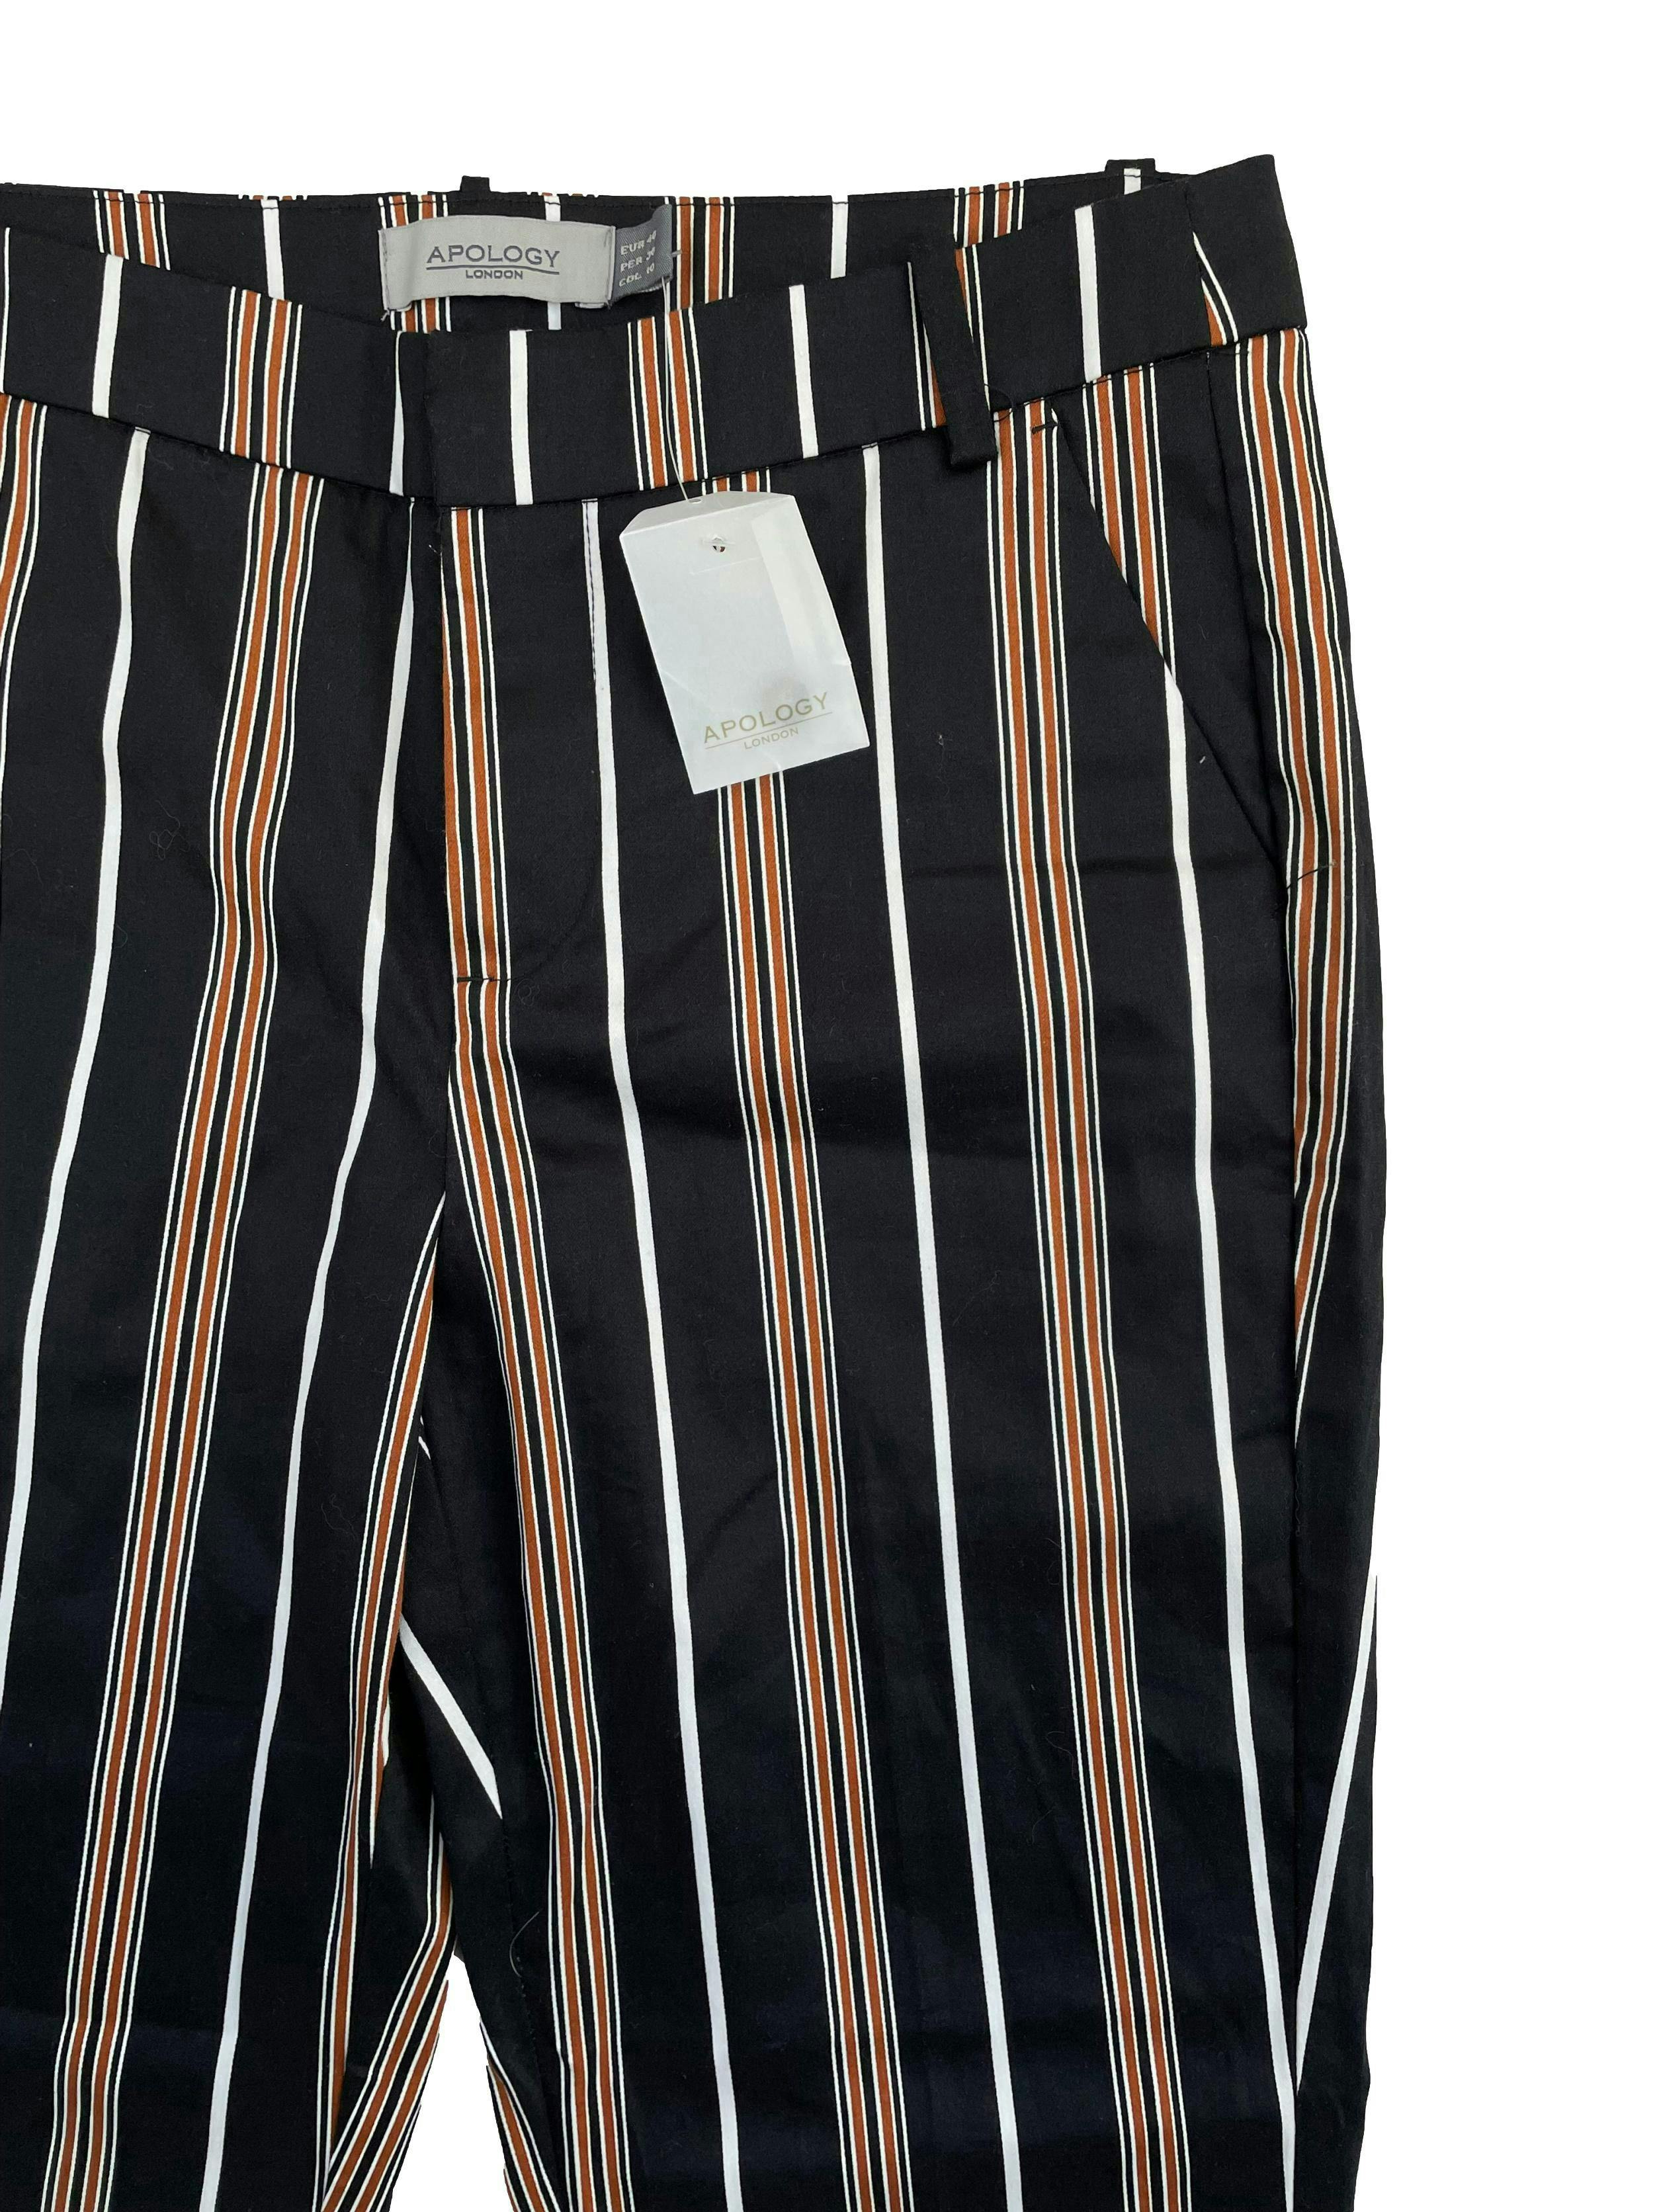 Pantalón Apology negro con rayas blancas y marrones verticales, bolsillos delanteros, corte slim. Cintura: 80cm, Largo: 98cm, Tiro: 26cm. Nuevo con etiqueta.